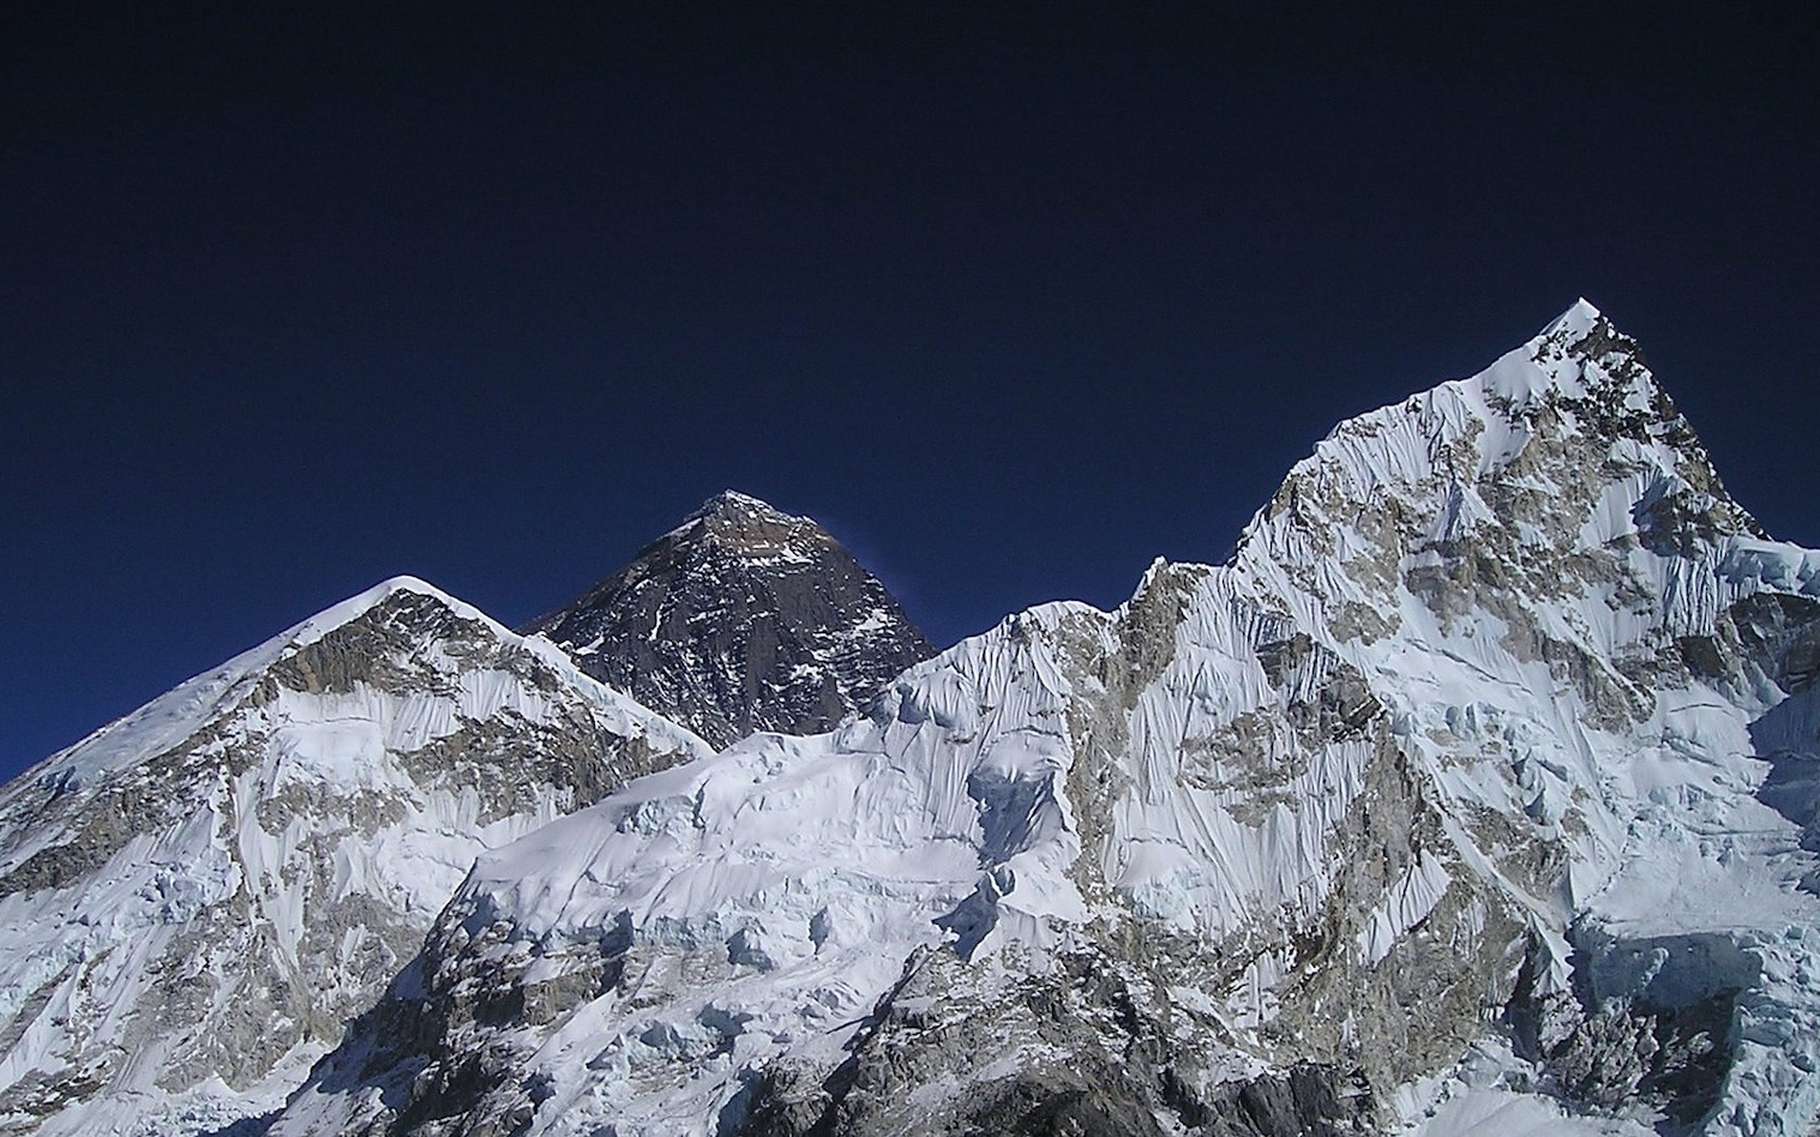 Avec une altitude de 8.848 mètres, l’Everest est officiellement le plus haut sommet du monde. © Simon, Pixabay License